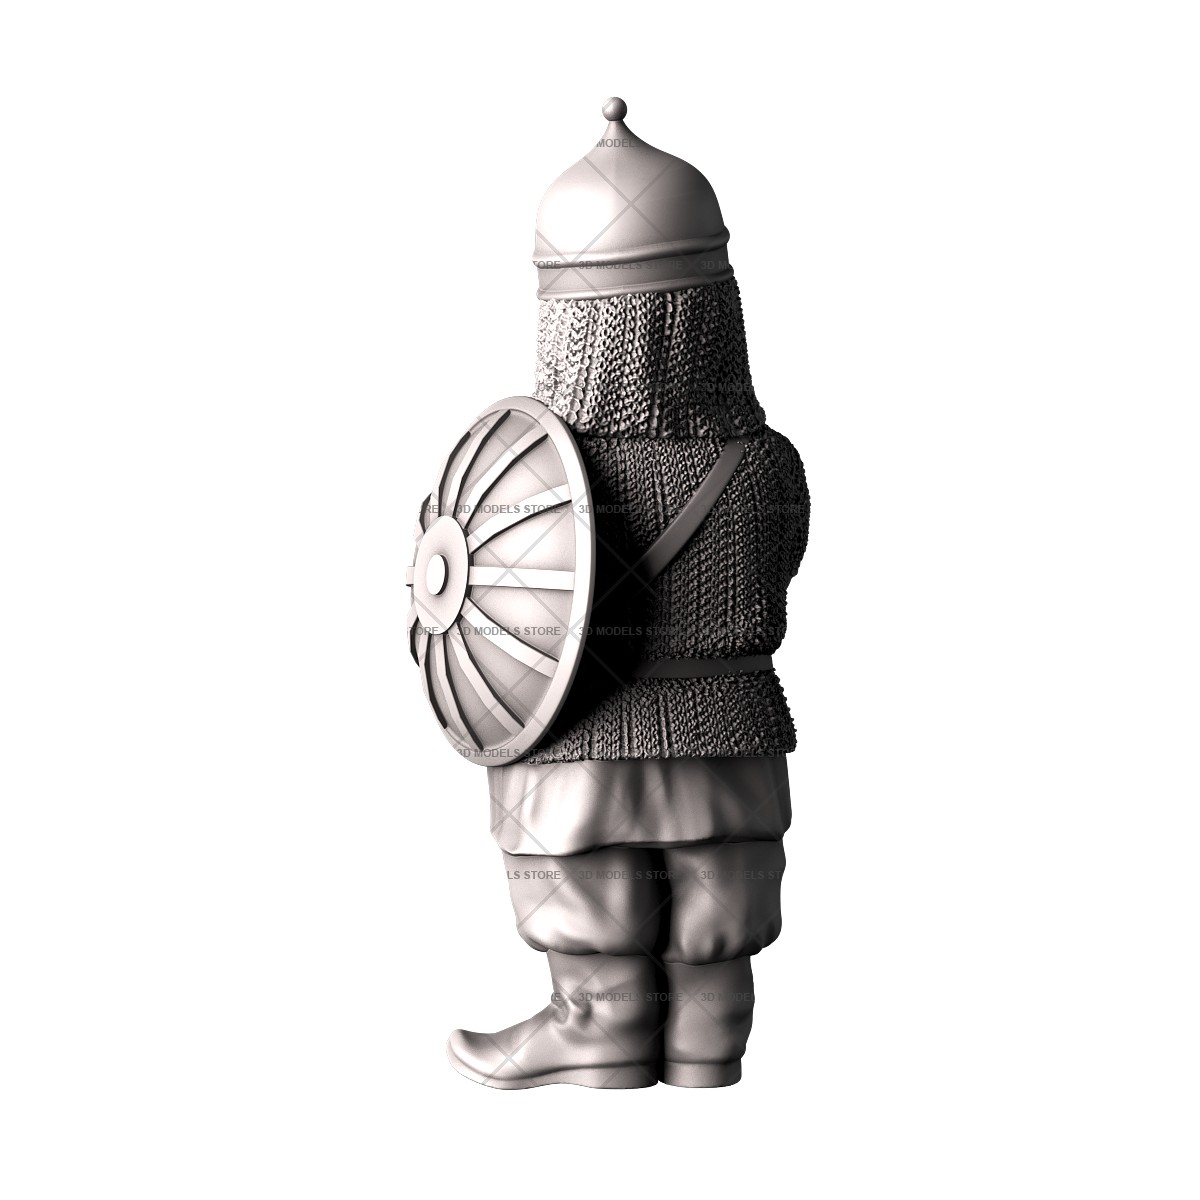 Sculpture warrior, 3d models (stl)